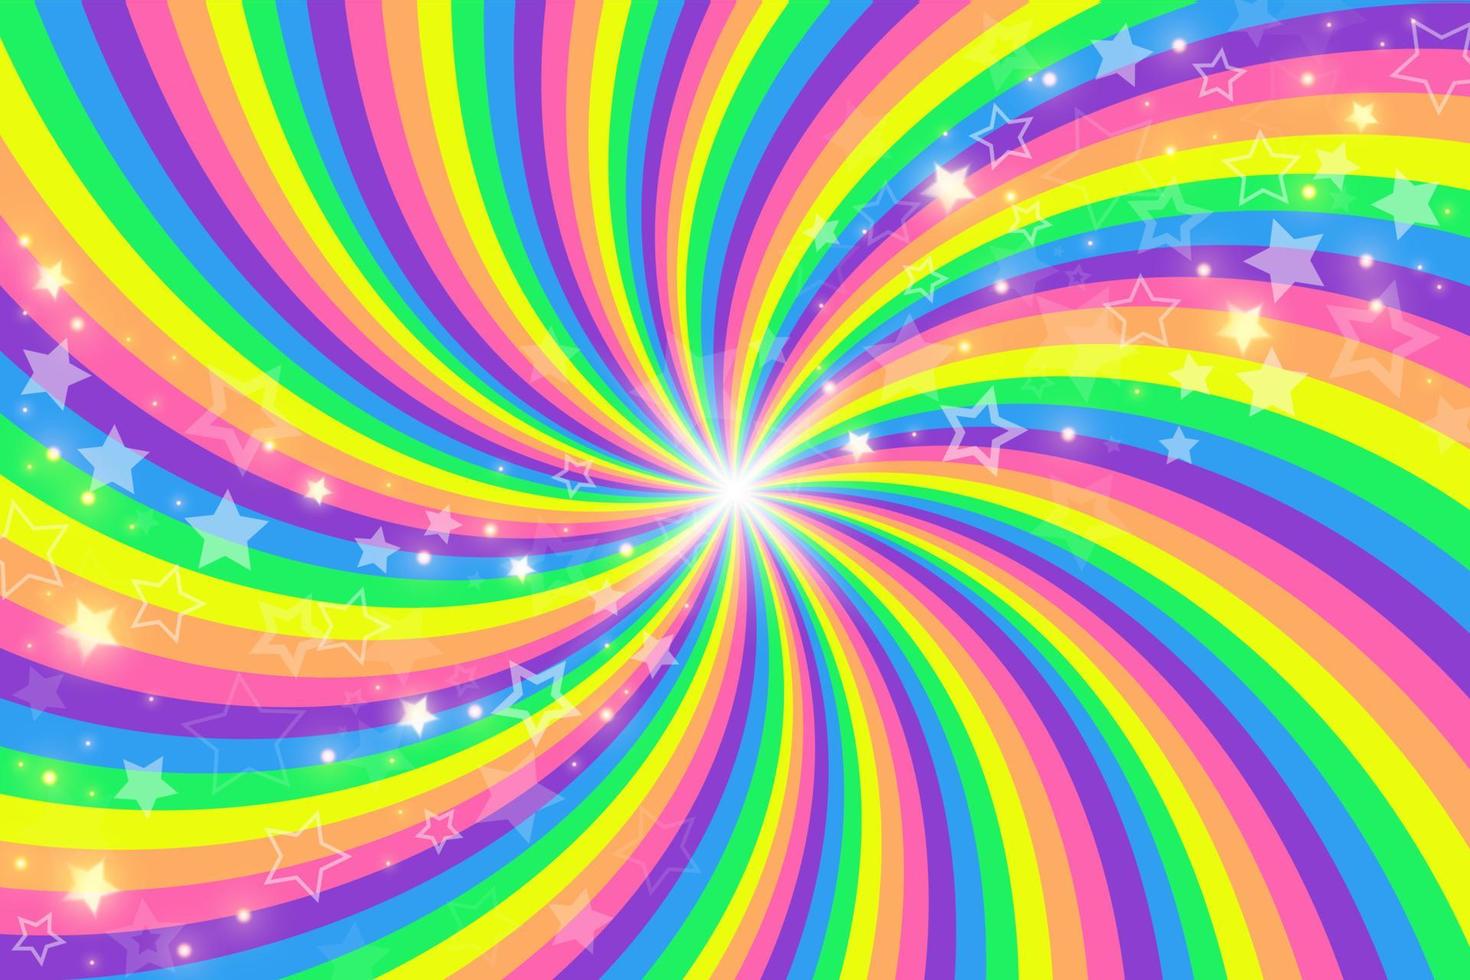 rainbow swirl bakgrund med stjärnor. radiell gradient regnbåge av vriden spiral. vektor illustration.